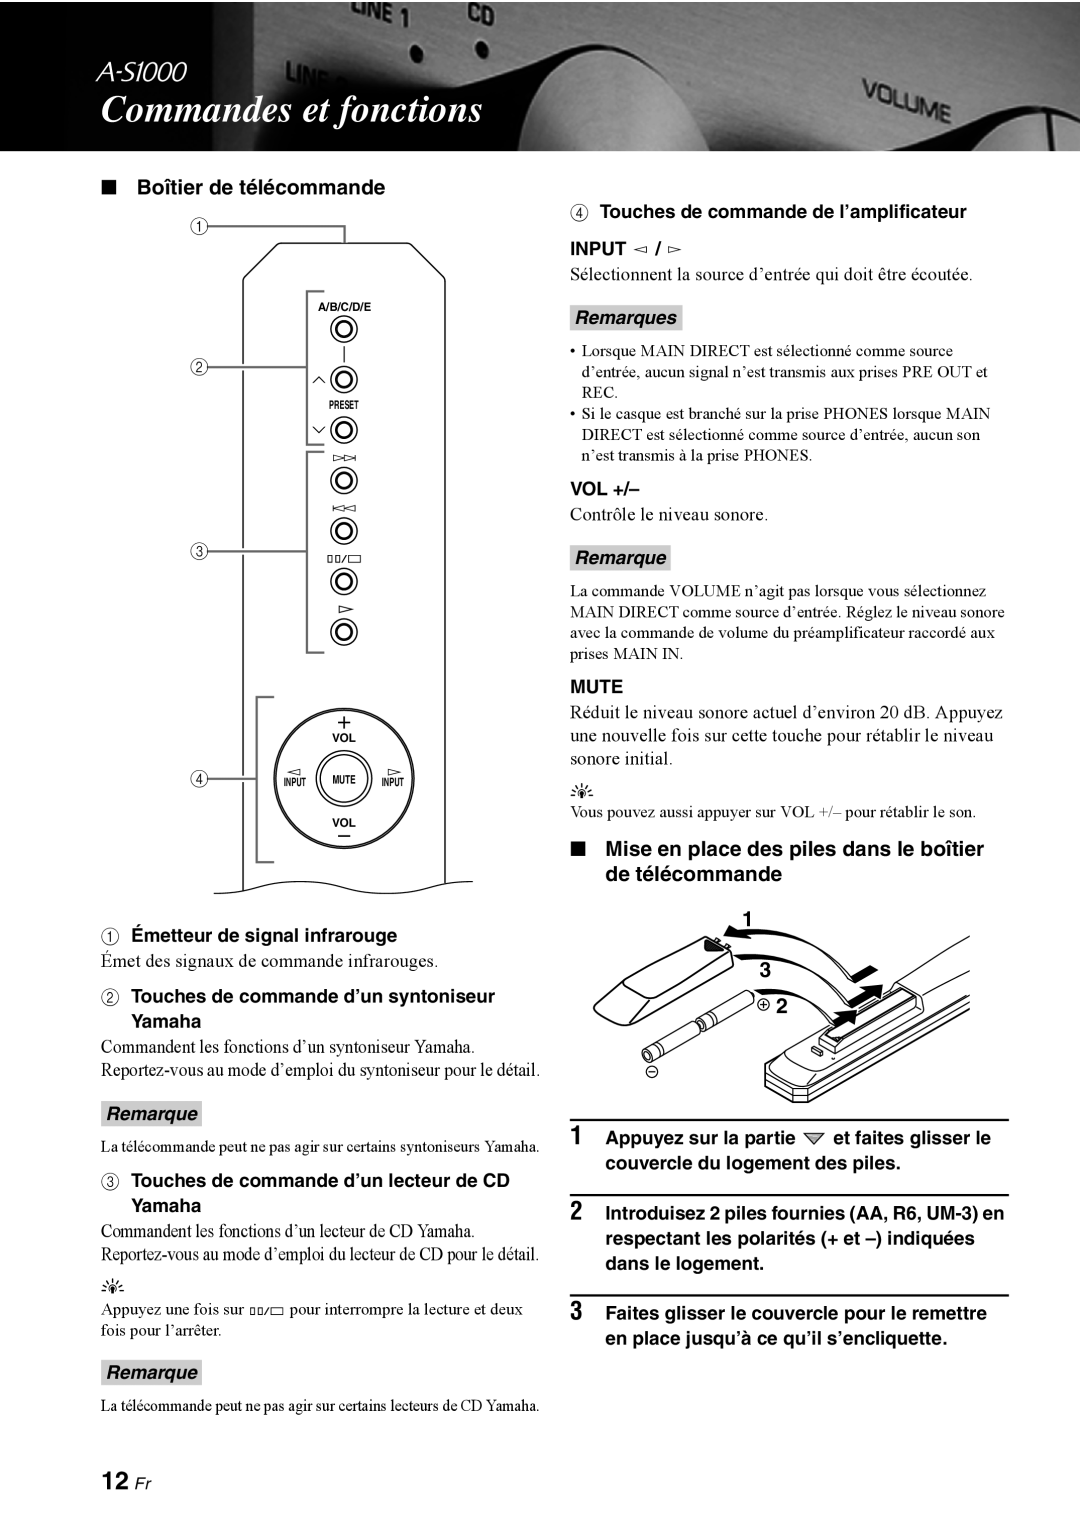 Yamaha A-S1000 owner manual 12 Fr, Boîtier de télécommande, Commandes et fonctions, Remarques 